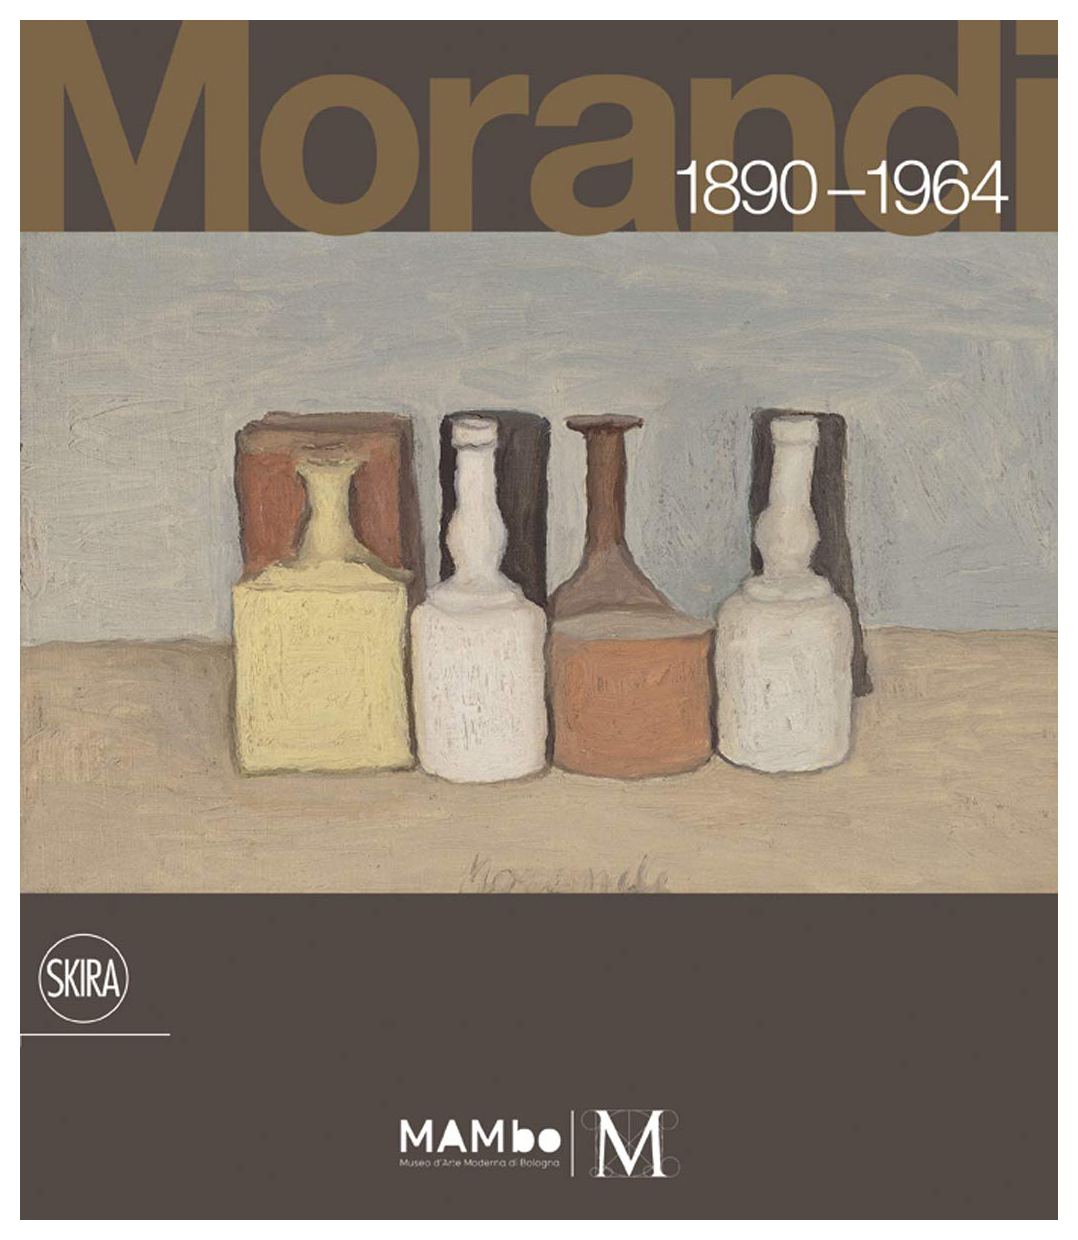 Giorgio Morandi, 1890-1964